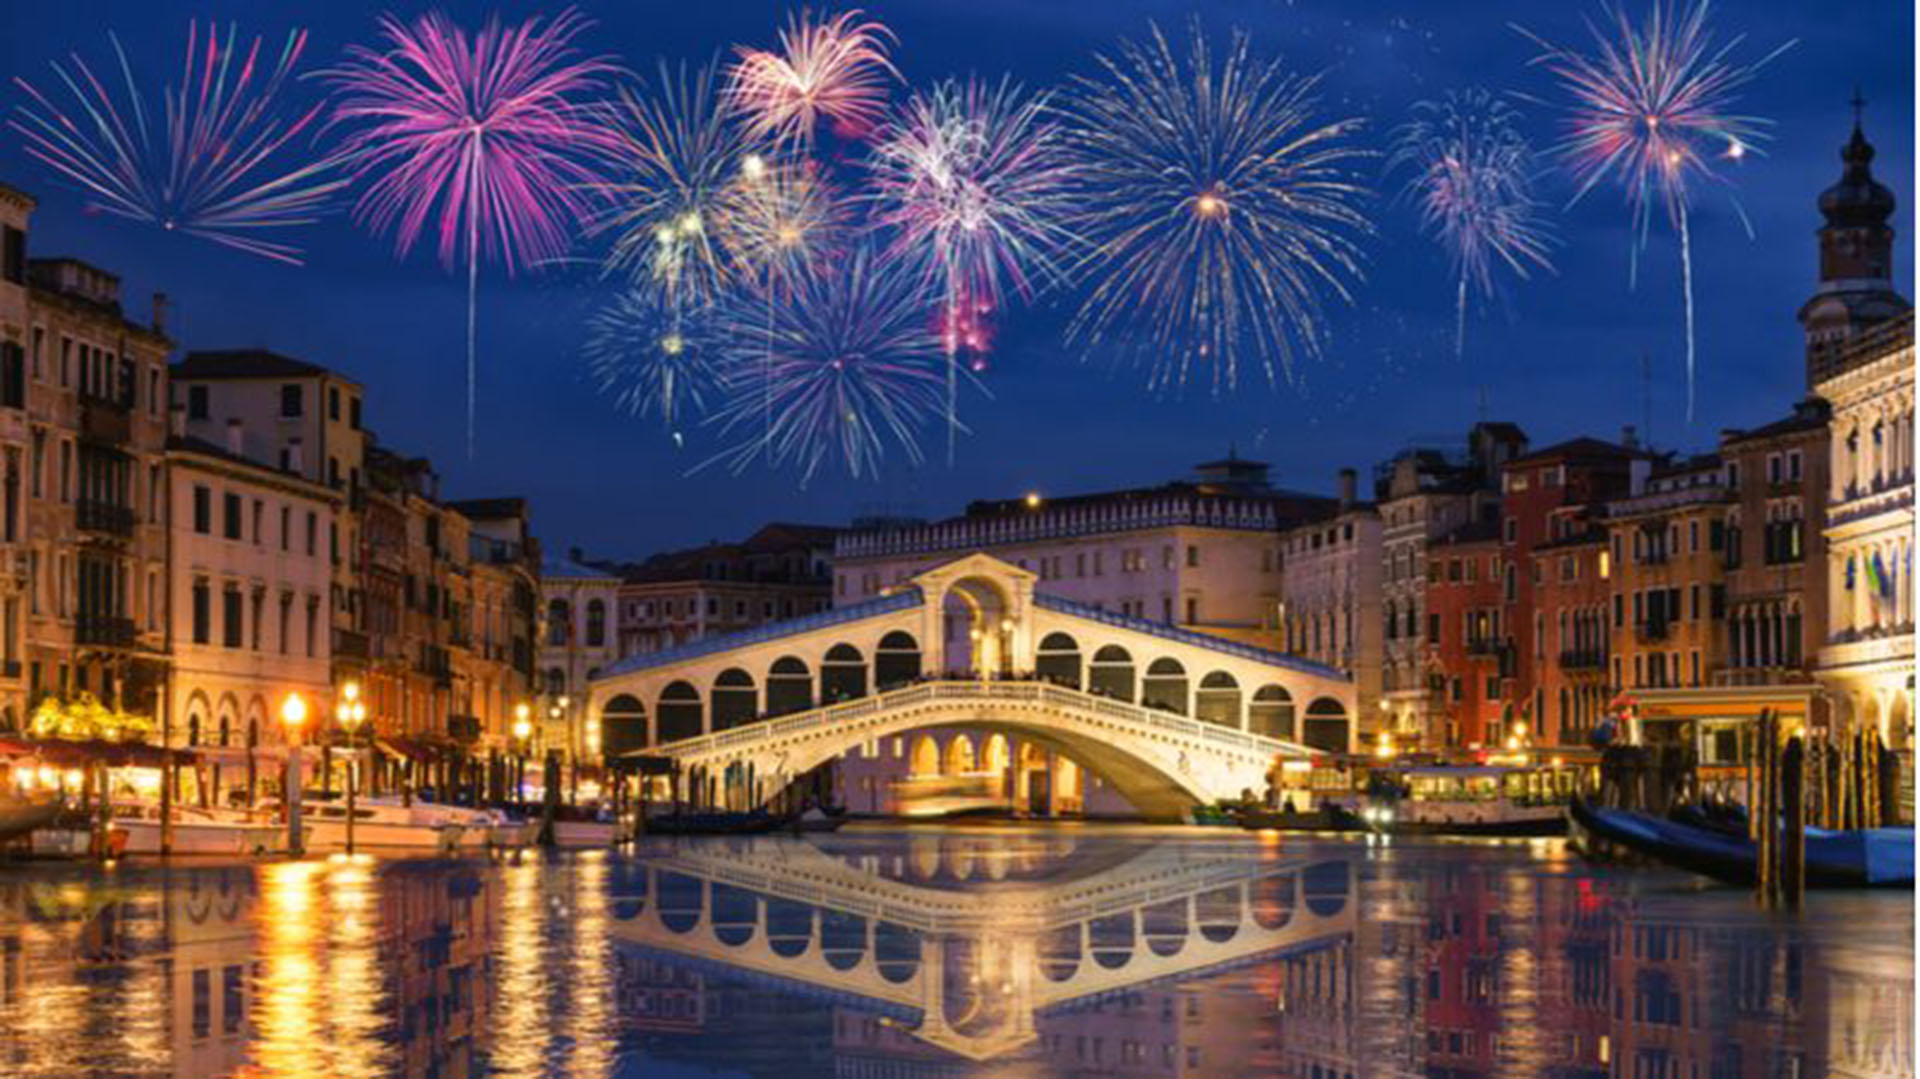 Venecia está situada al norte de Italia. La ciudad no tiene caminos, solo canales, incluida la vía pública del Gran Canal